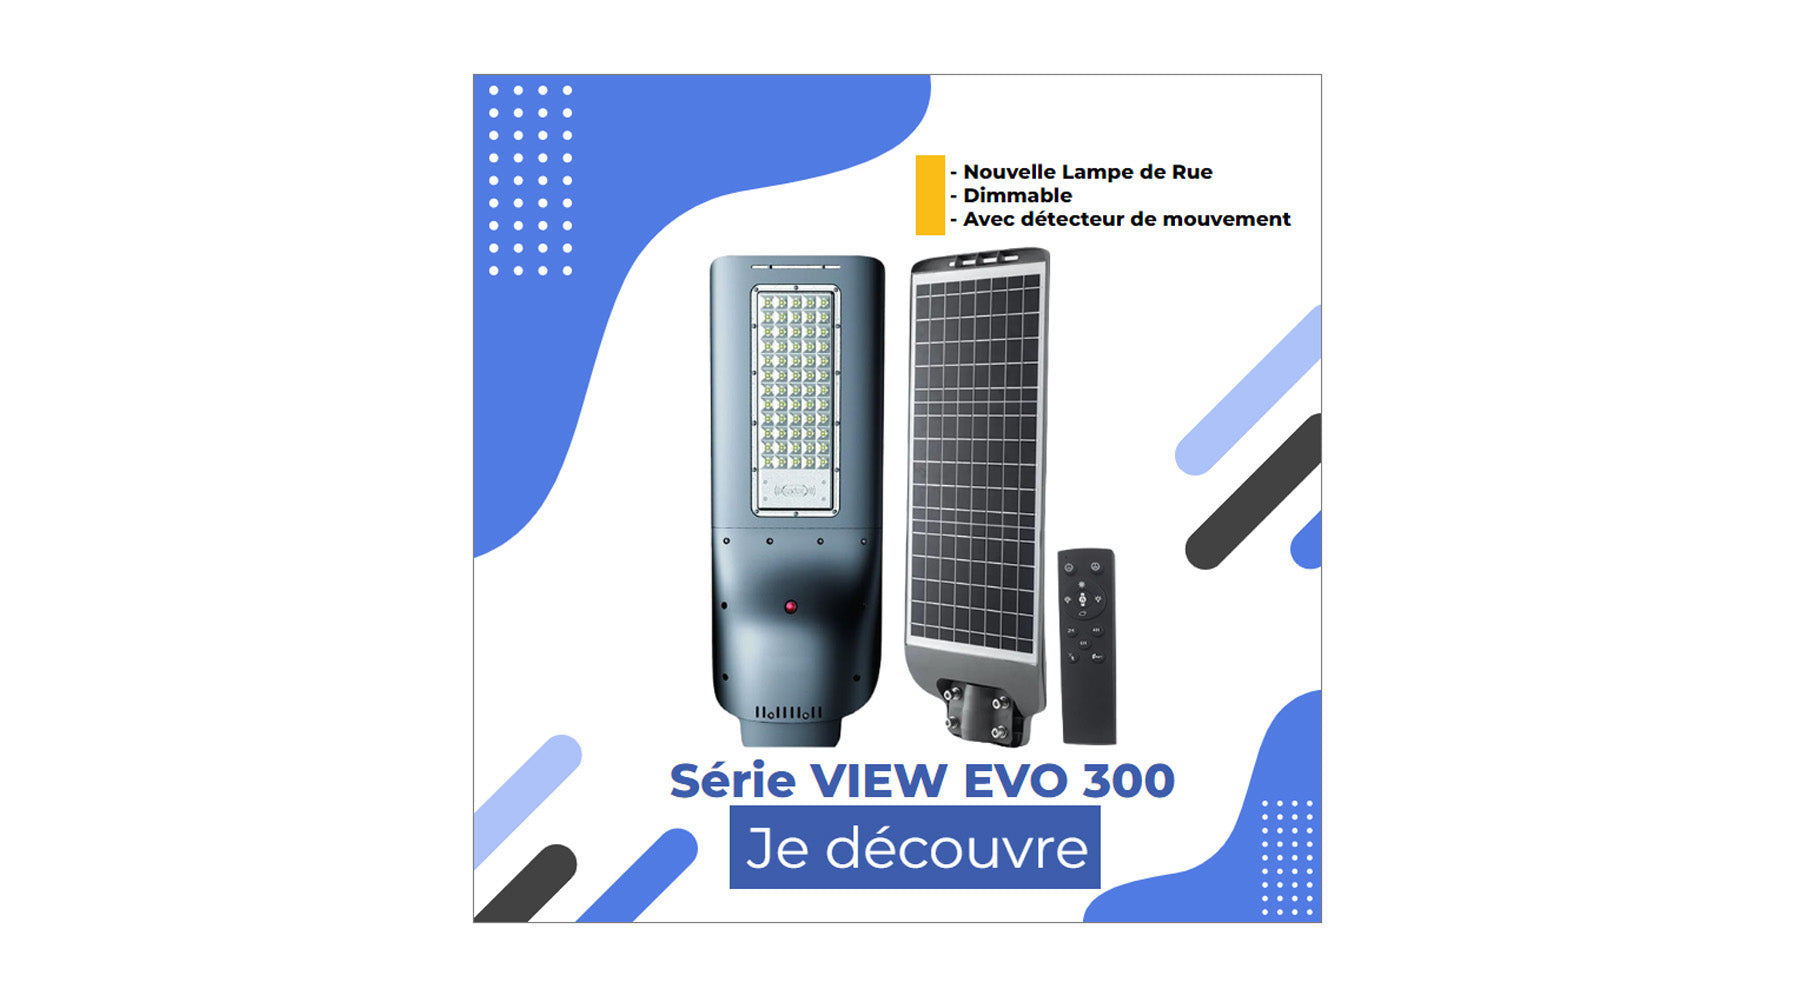 [NOUVEAU] Lampe de rue LED solaire - Série VIEW EVO 300